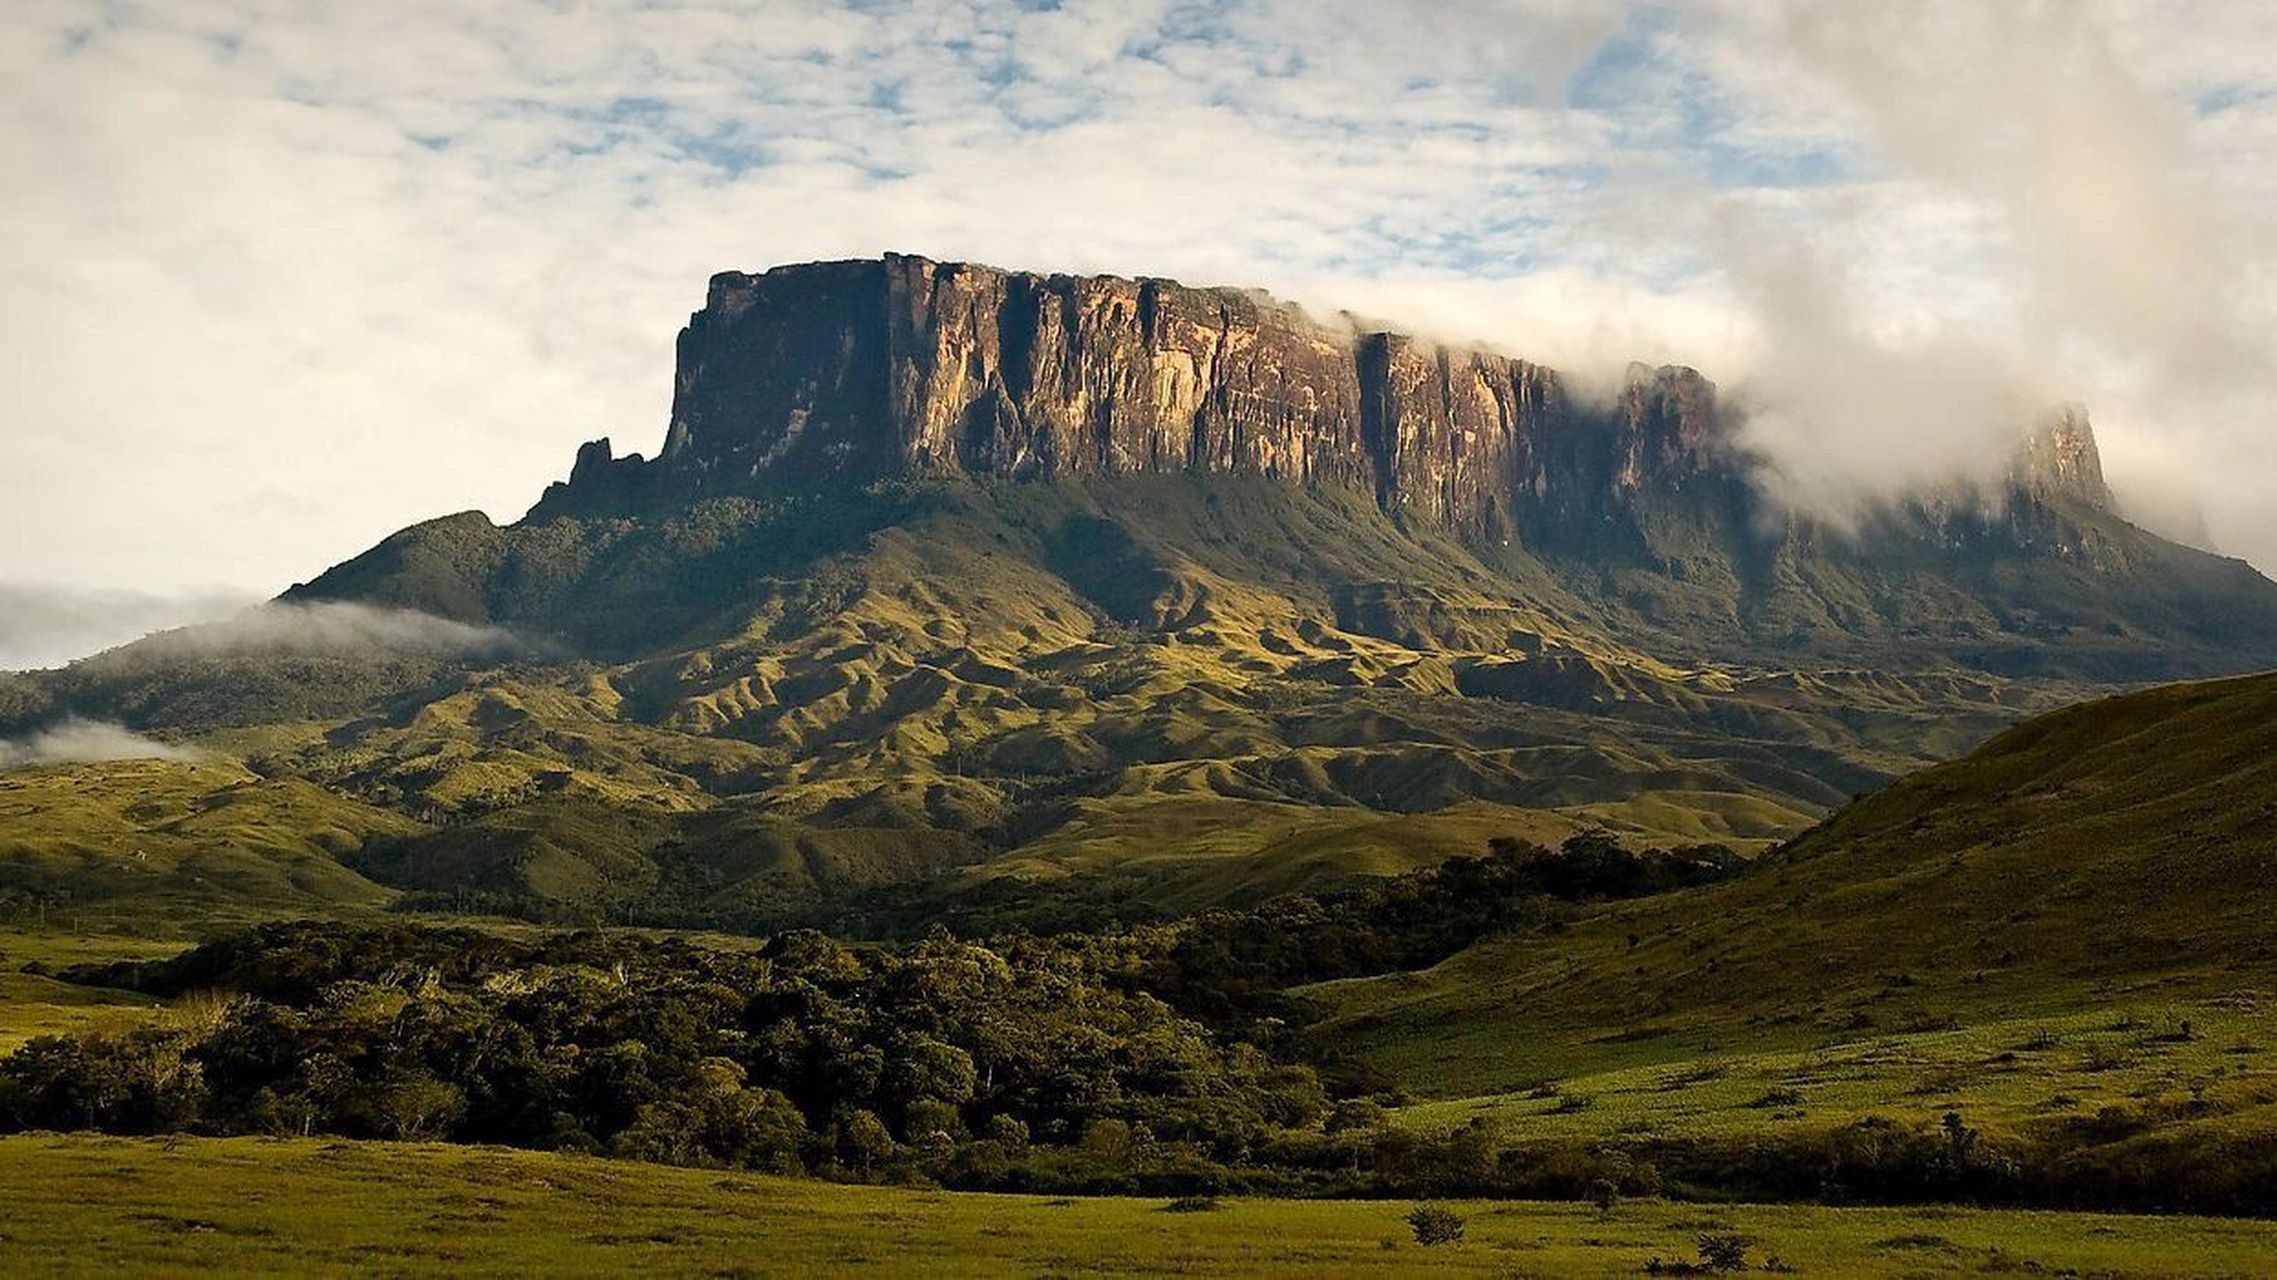 横跨南美洲三国的罗赖马山 罗赖马山是南美洲北部帕卡赖马山脉的最高